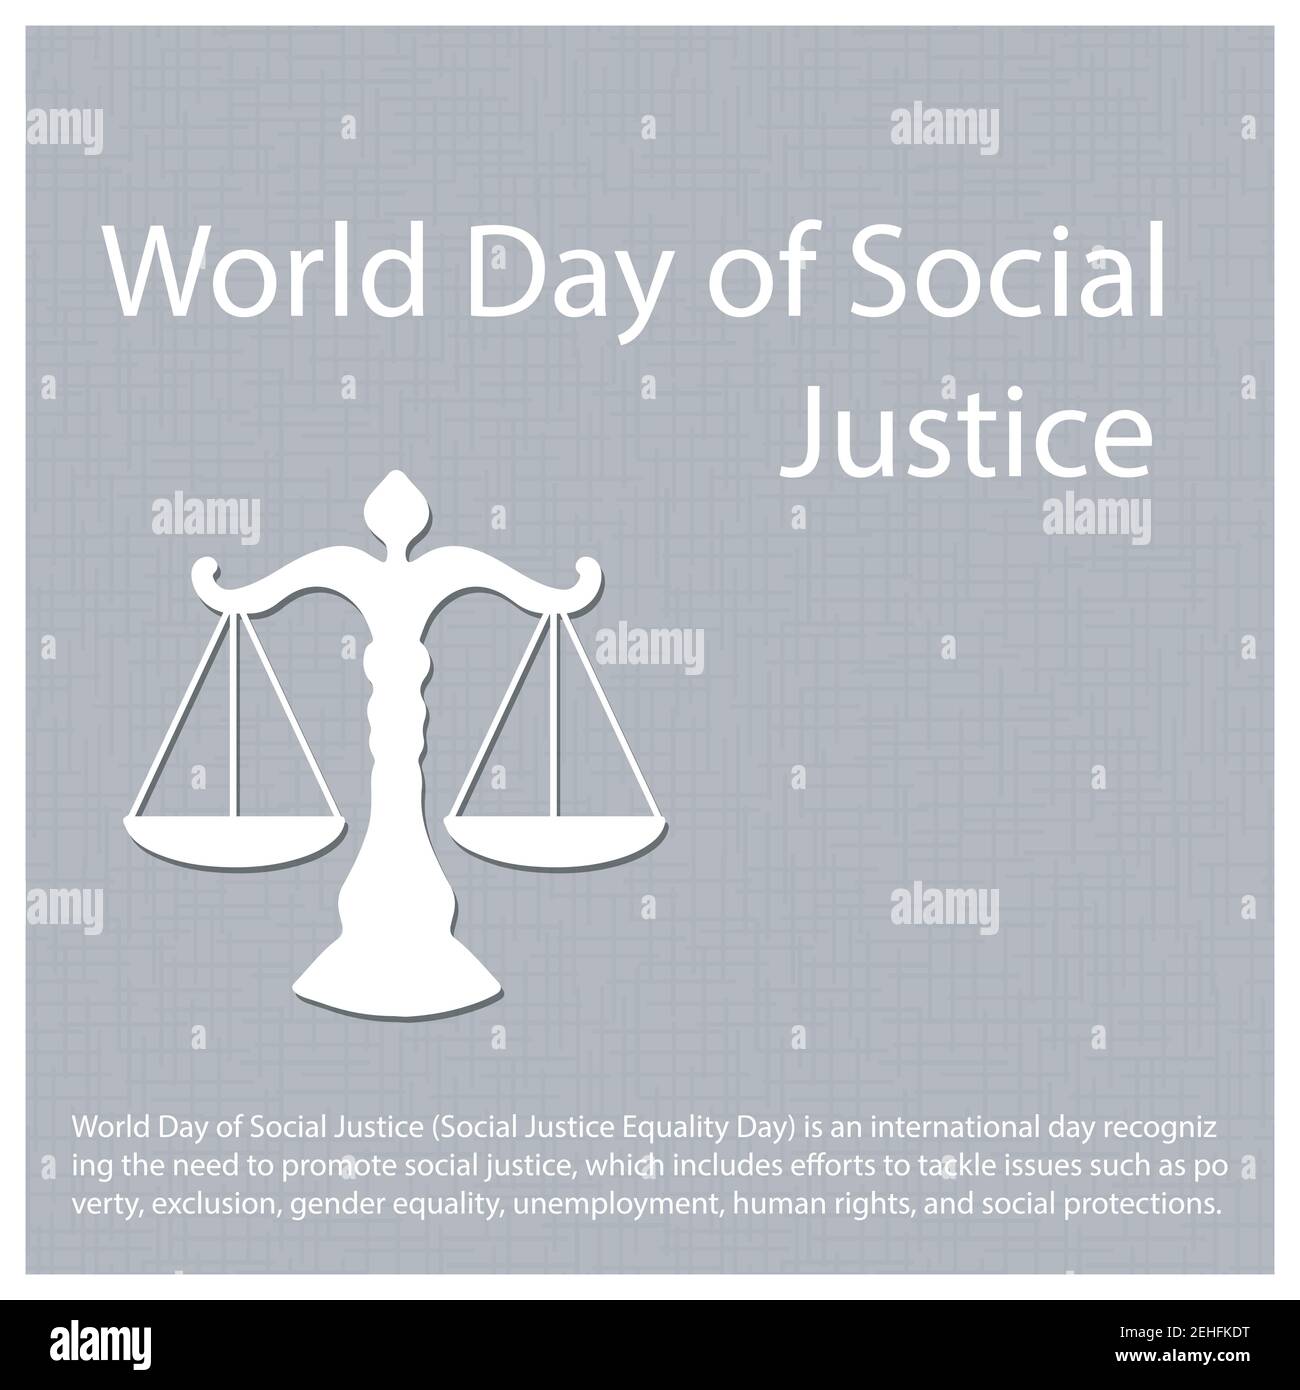 Der Welttag der sozialen Gerechtigkeit ist ein internationaler Tag, an dem Anstrengungen unternommen werden, um Themen wie Armut, Ausgrenzung, Gleichstellung der Geschlechter und Arbeitslosigkeit anzugehen Stock Vektor